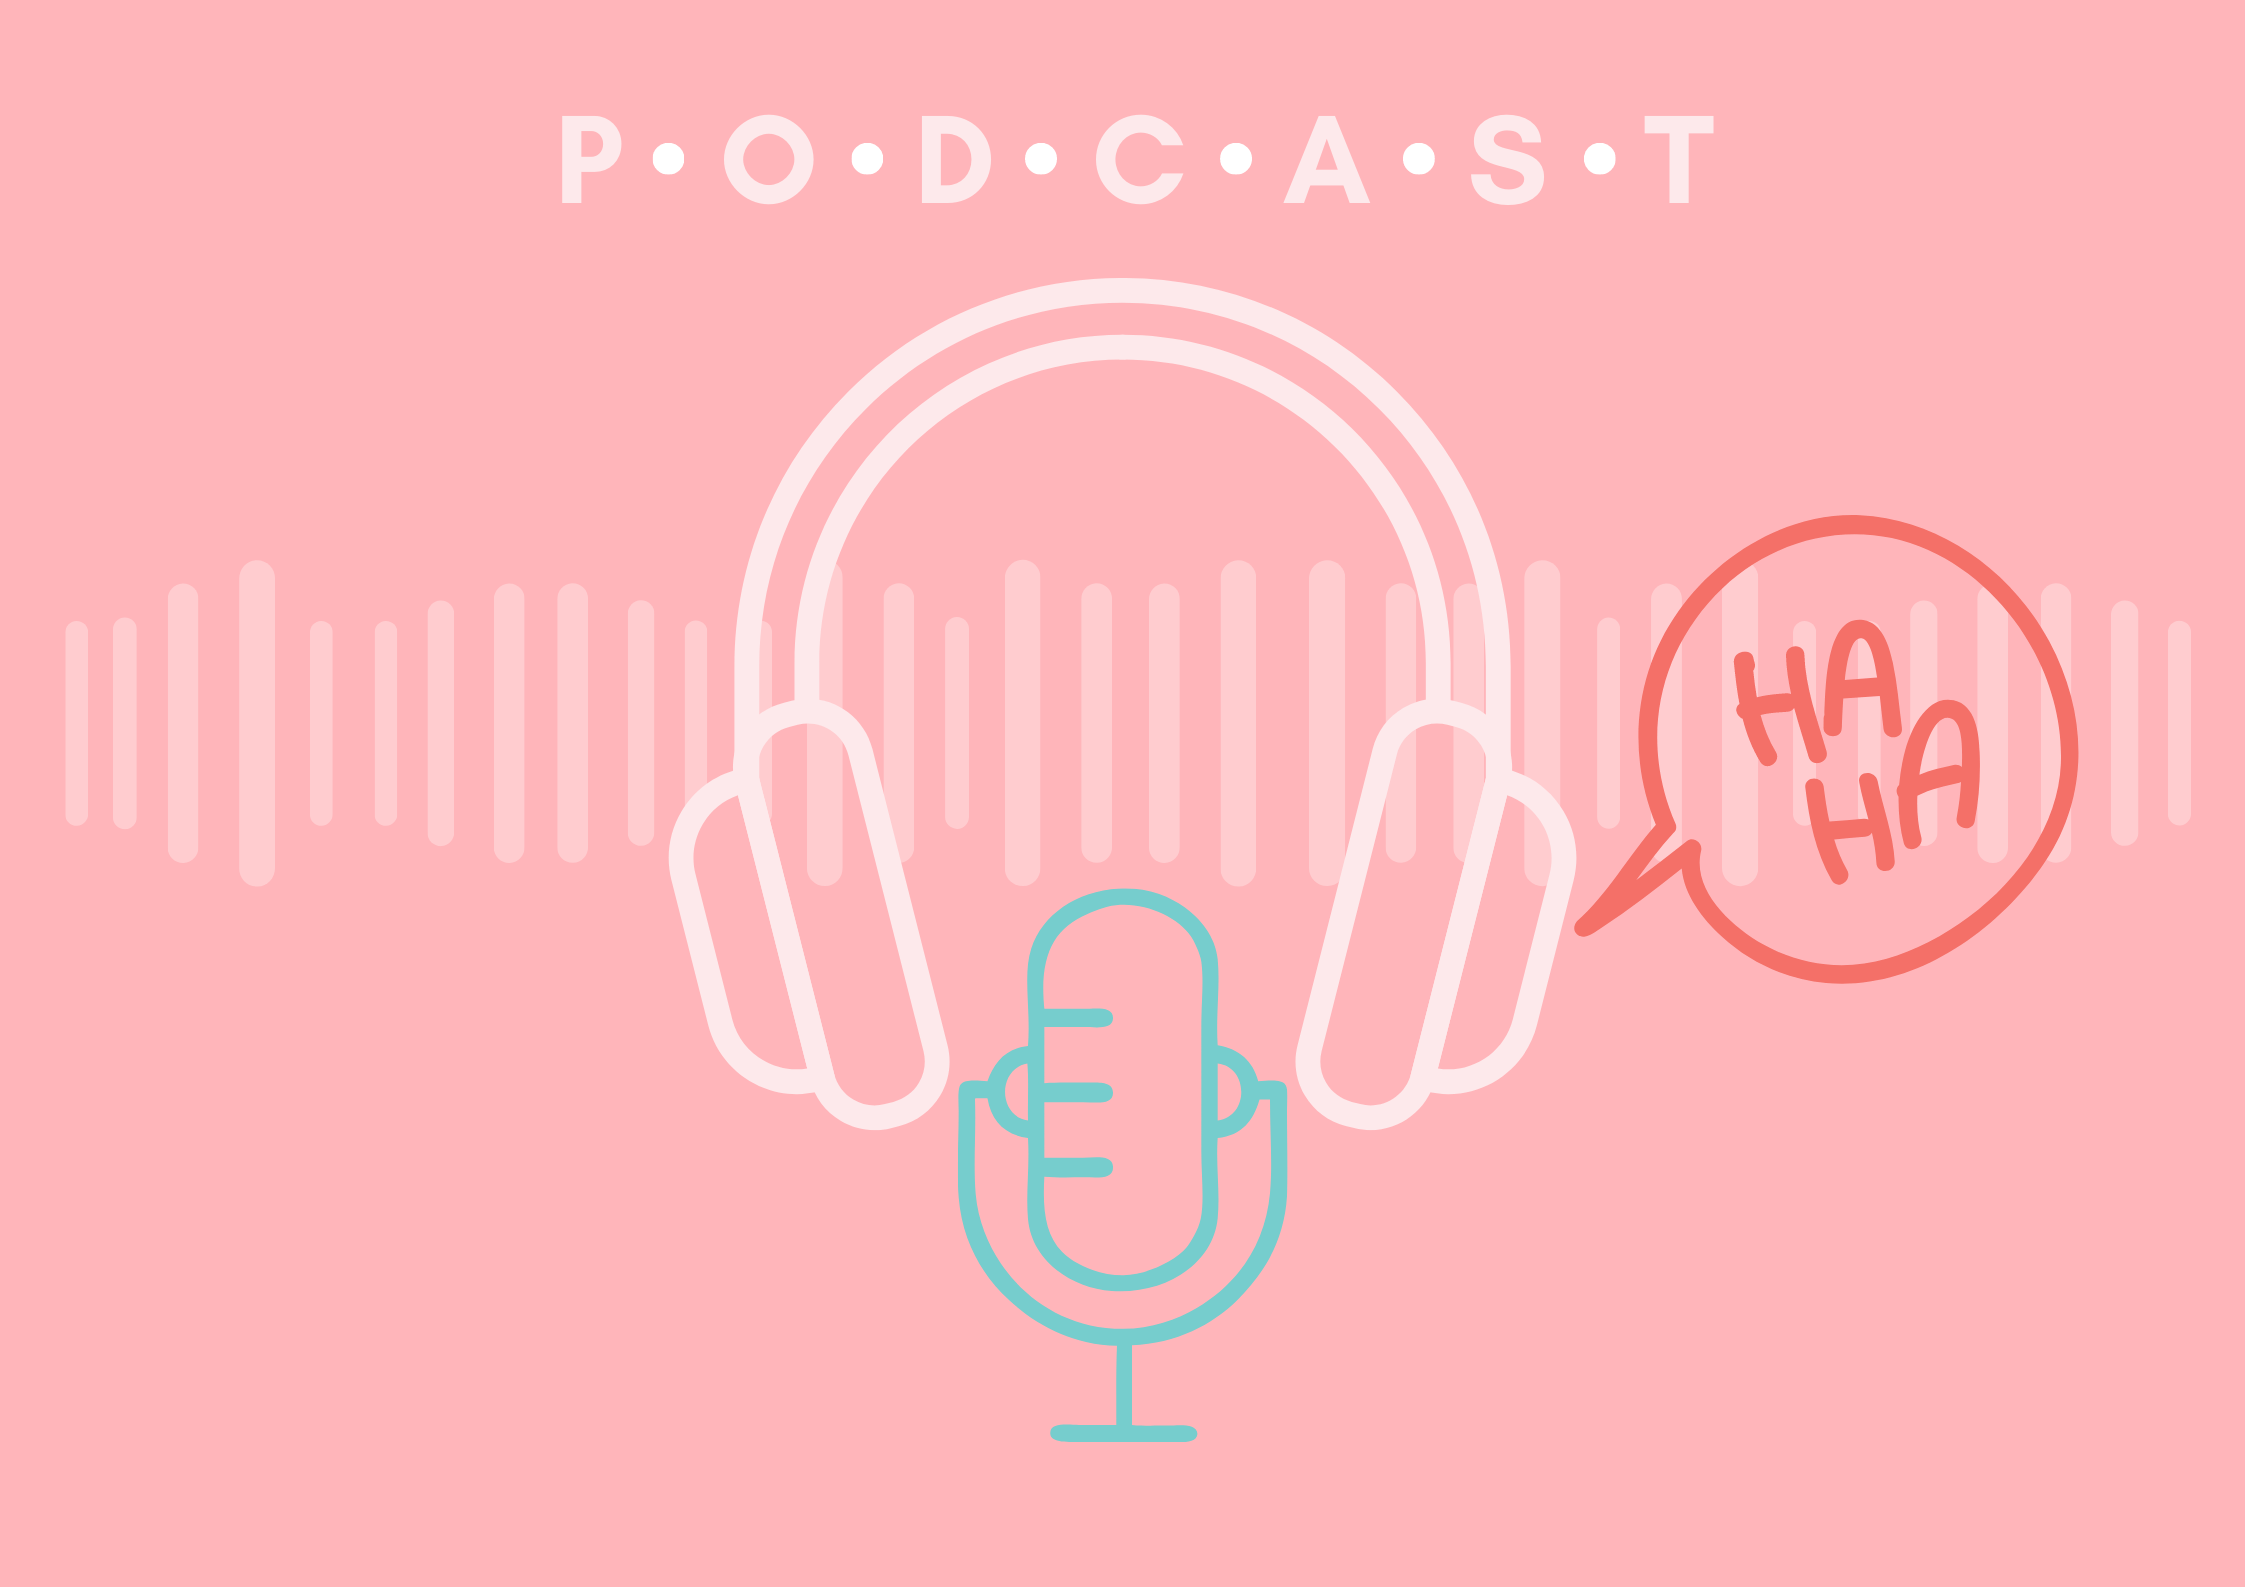 Splendid Speaking Podcast